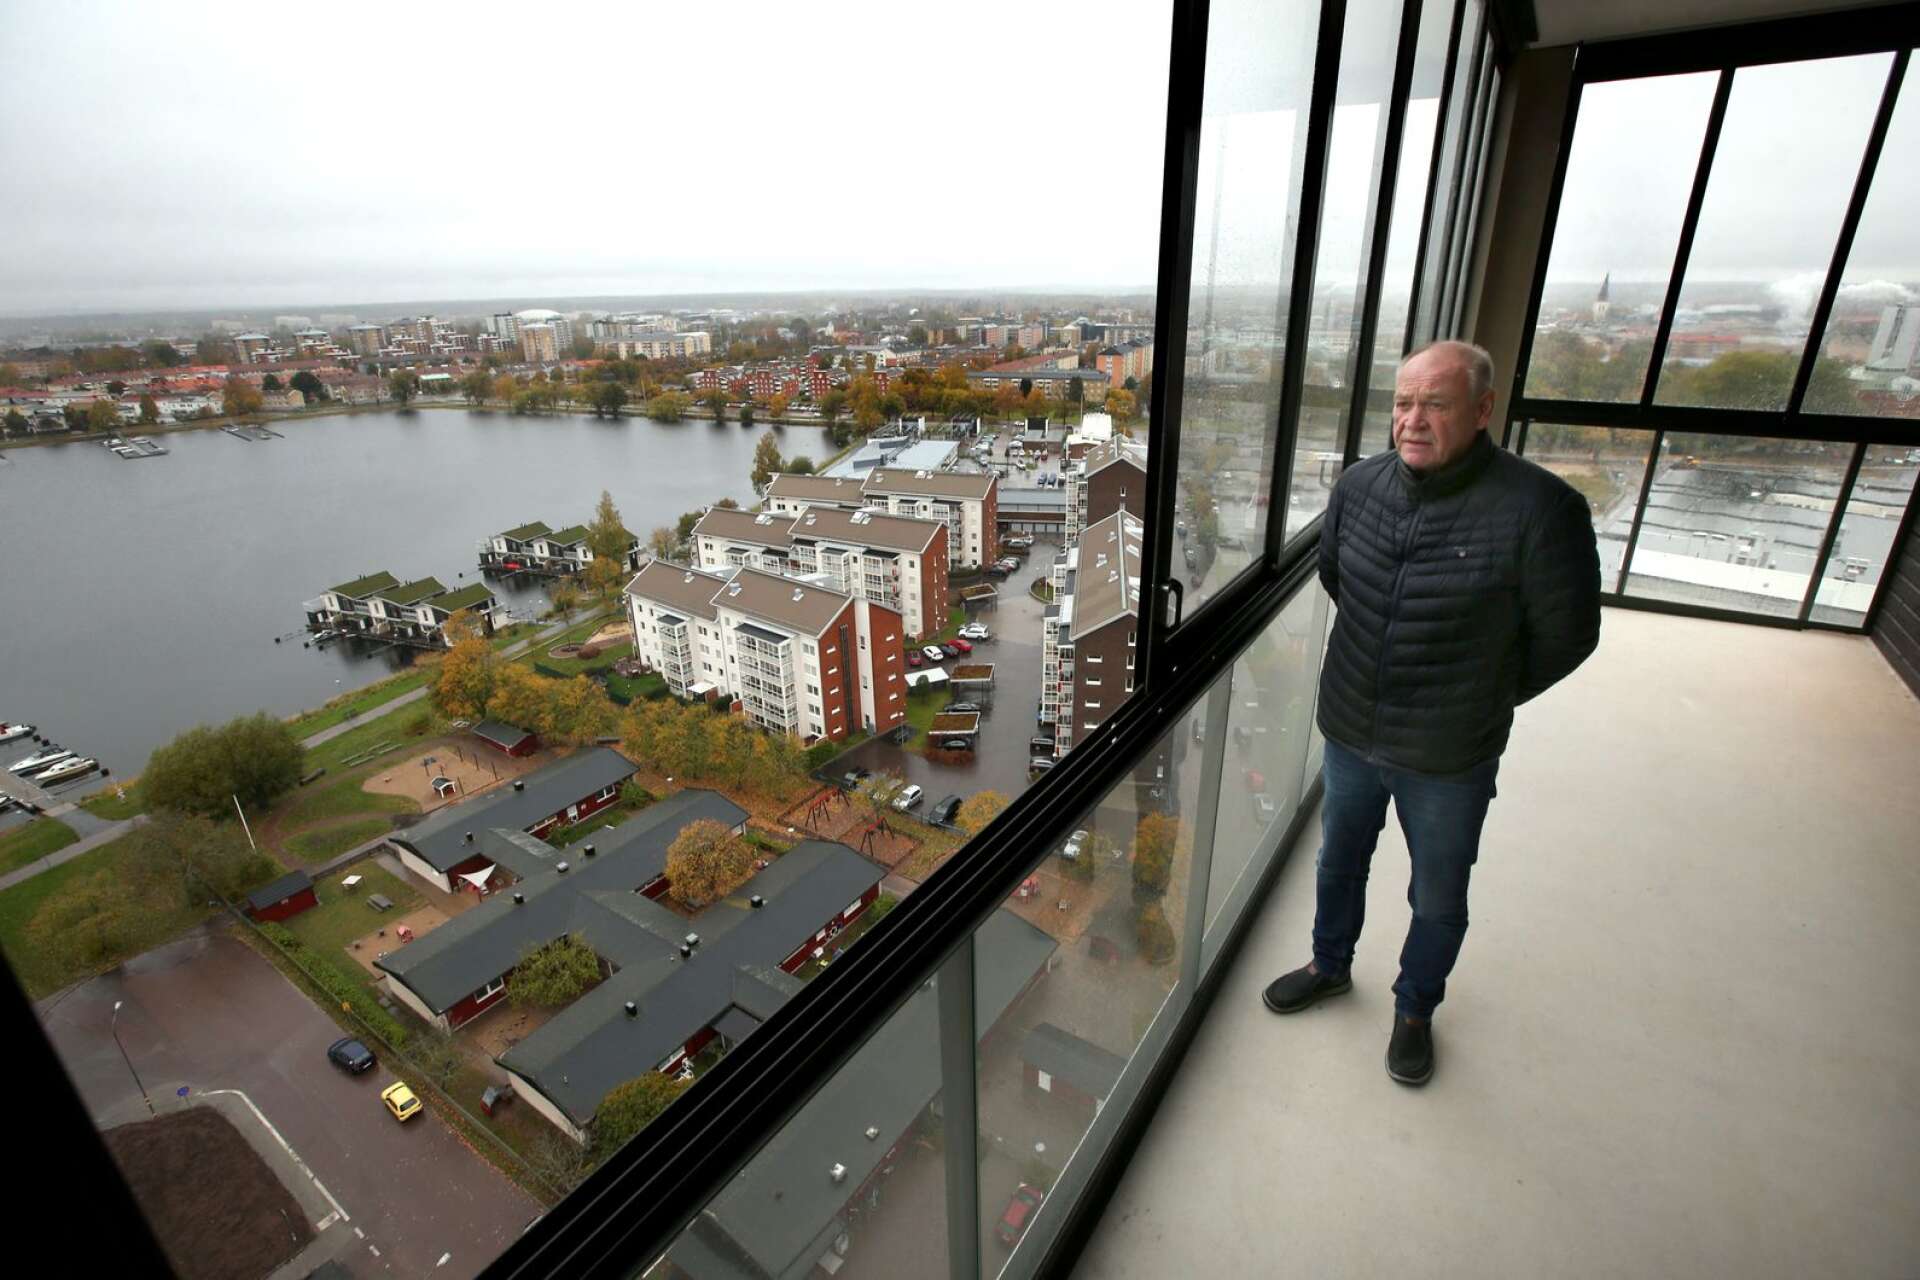 Utsikten från det översta planet i det nya 17-våningshuset på Orrholmen i Karlstad är storslagen med vyer över hela stan och ut över Vänern, konstaterar Karlstadhus vd Janne Gustafsson.